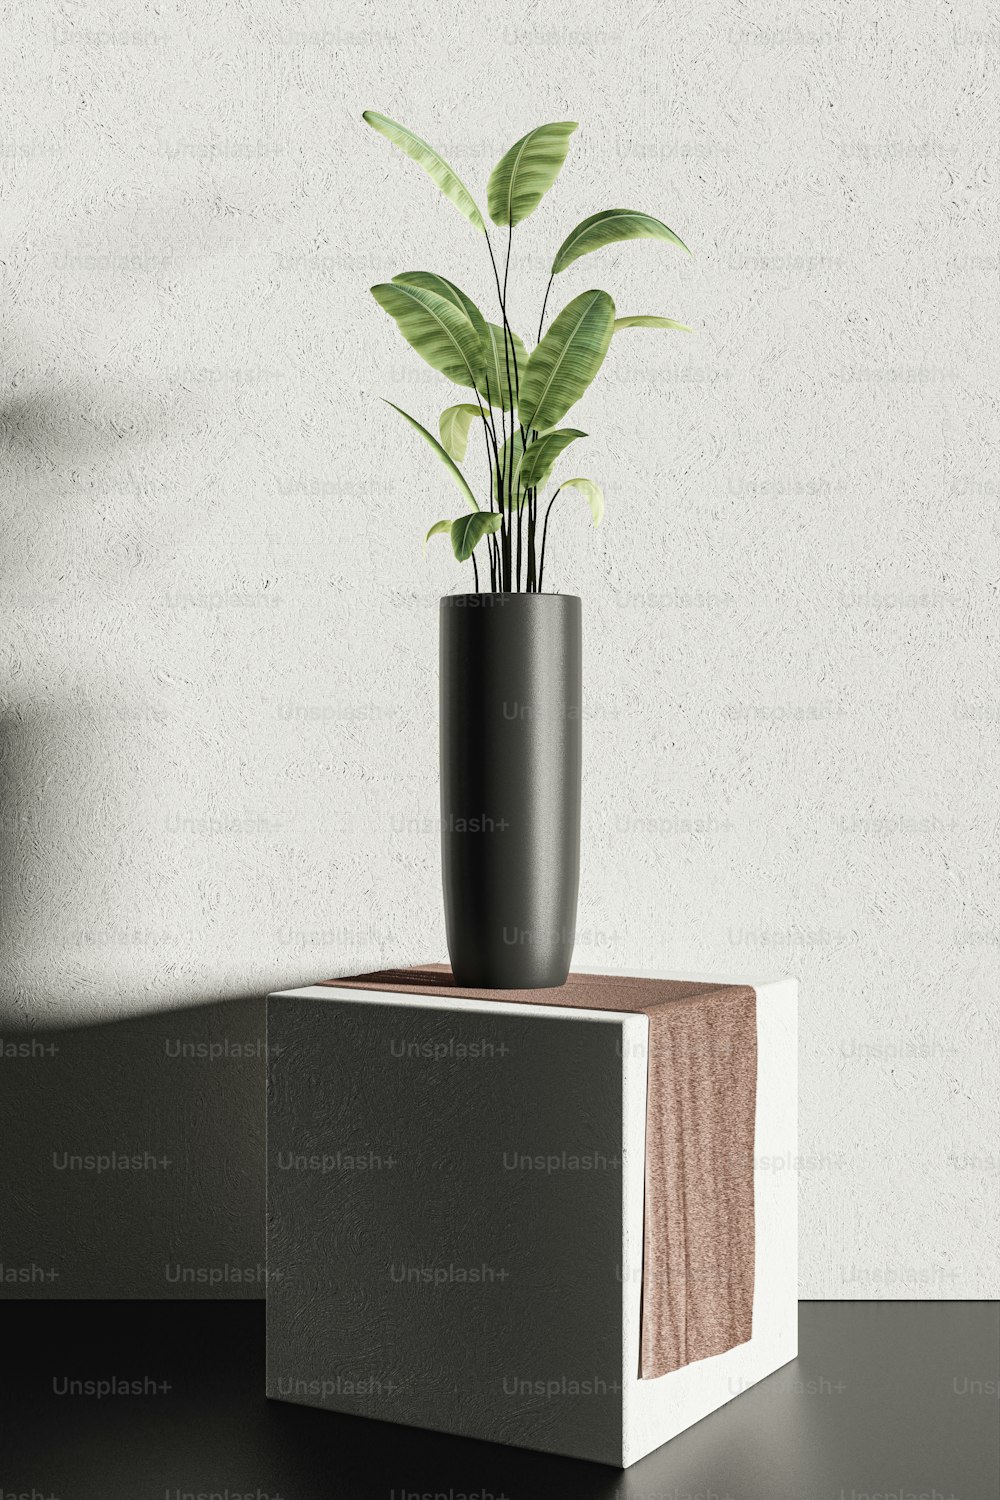 um vaso de planta sentado em cima de um bloco de madeira